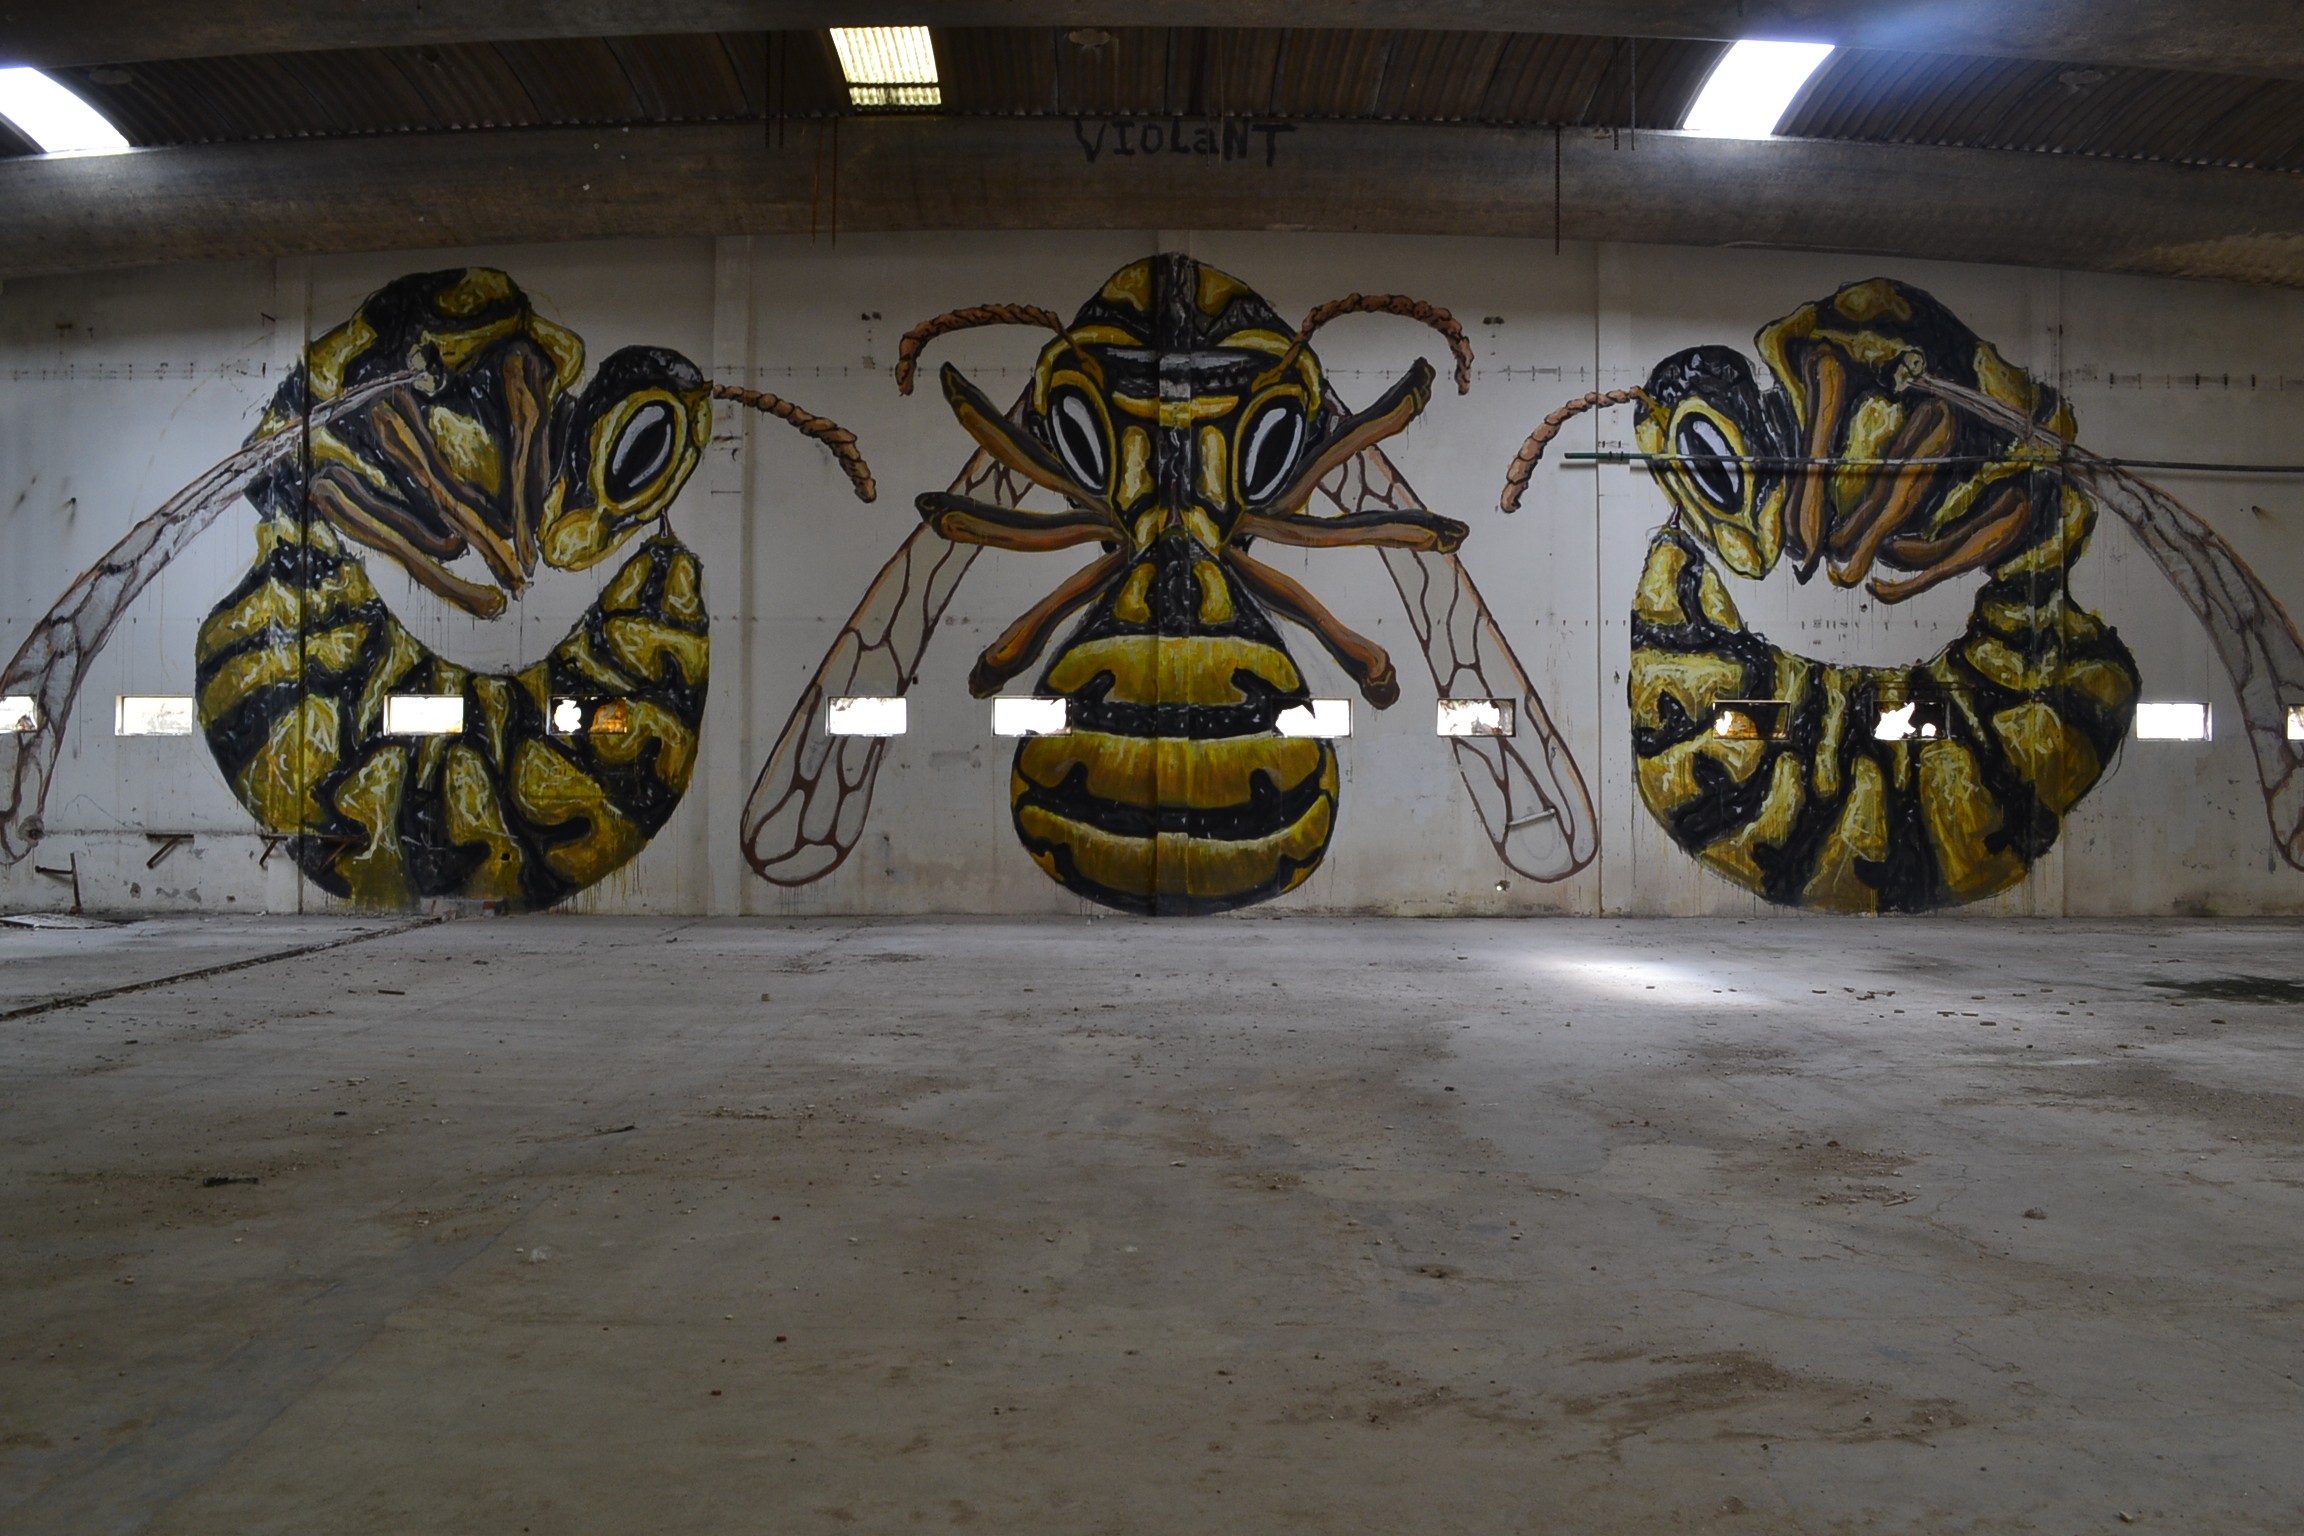 General 2304x1536 street art graffiti wall wasps lights insect